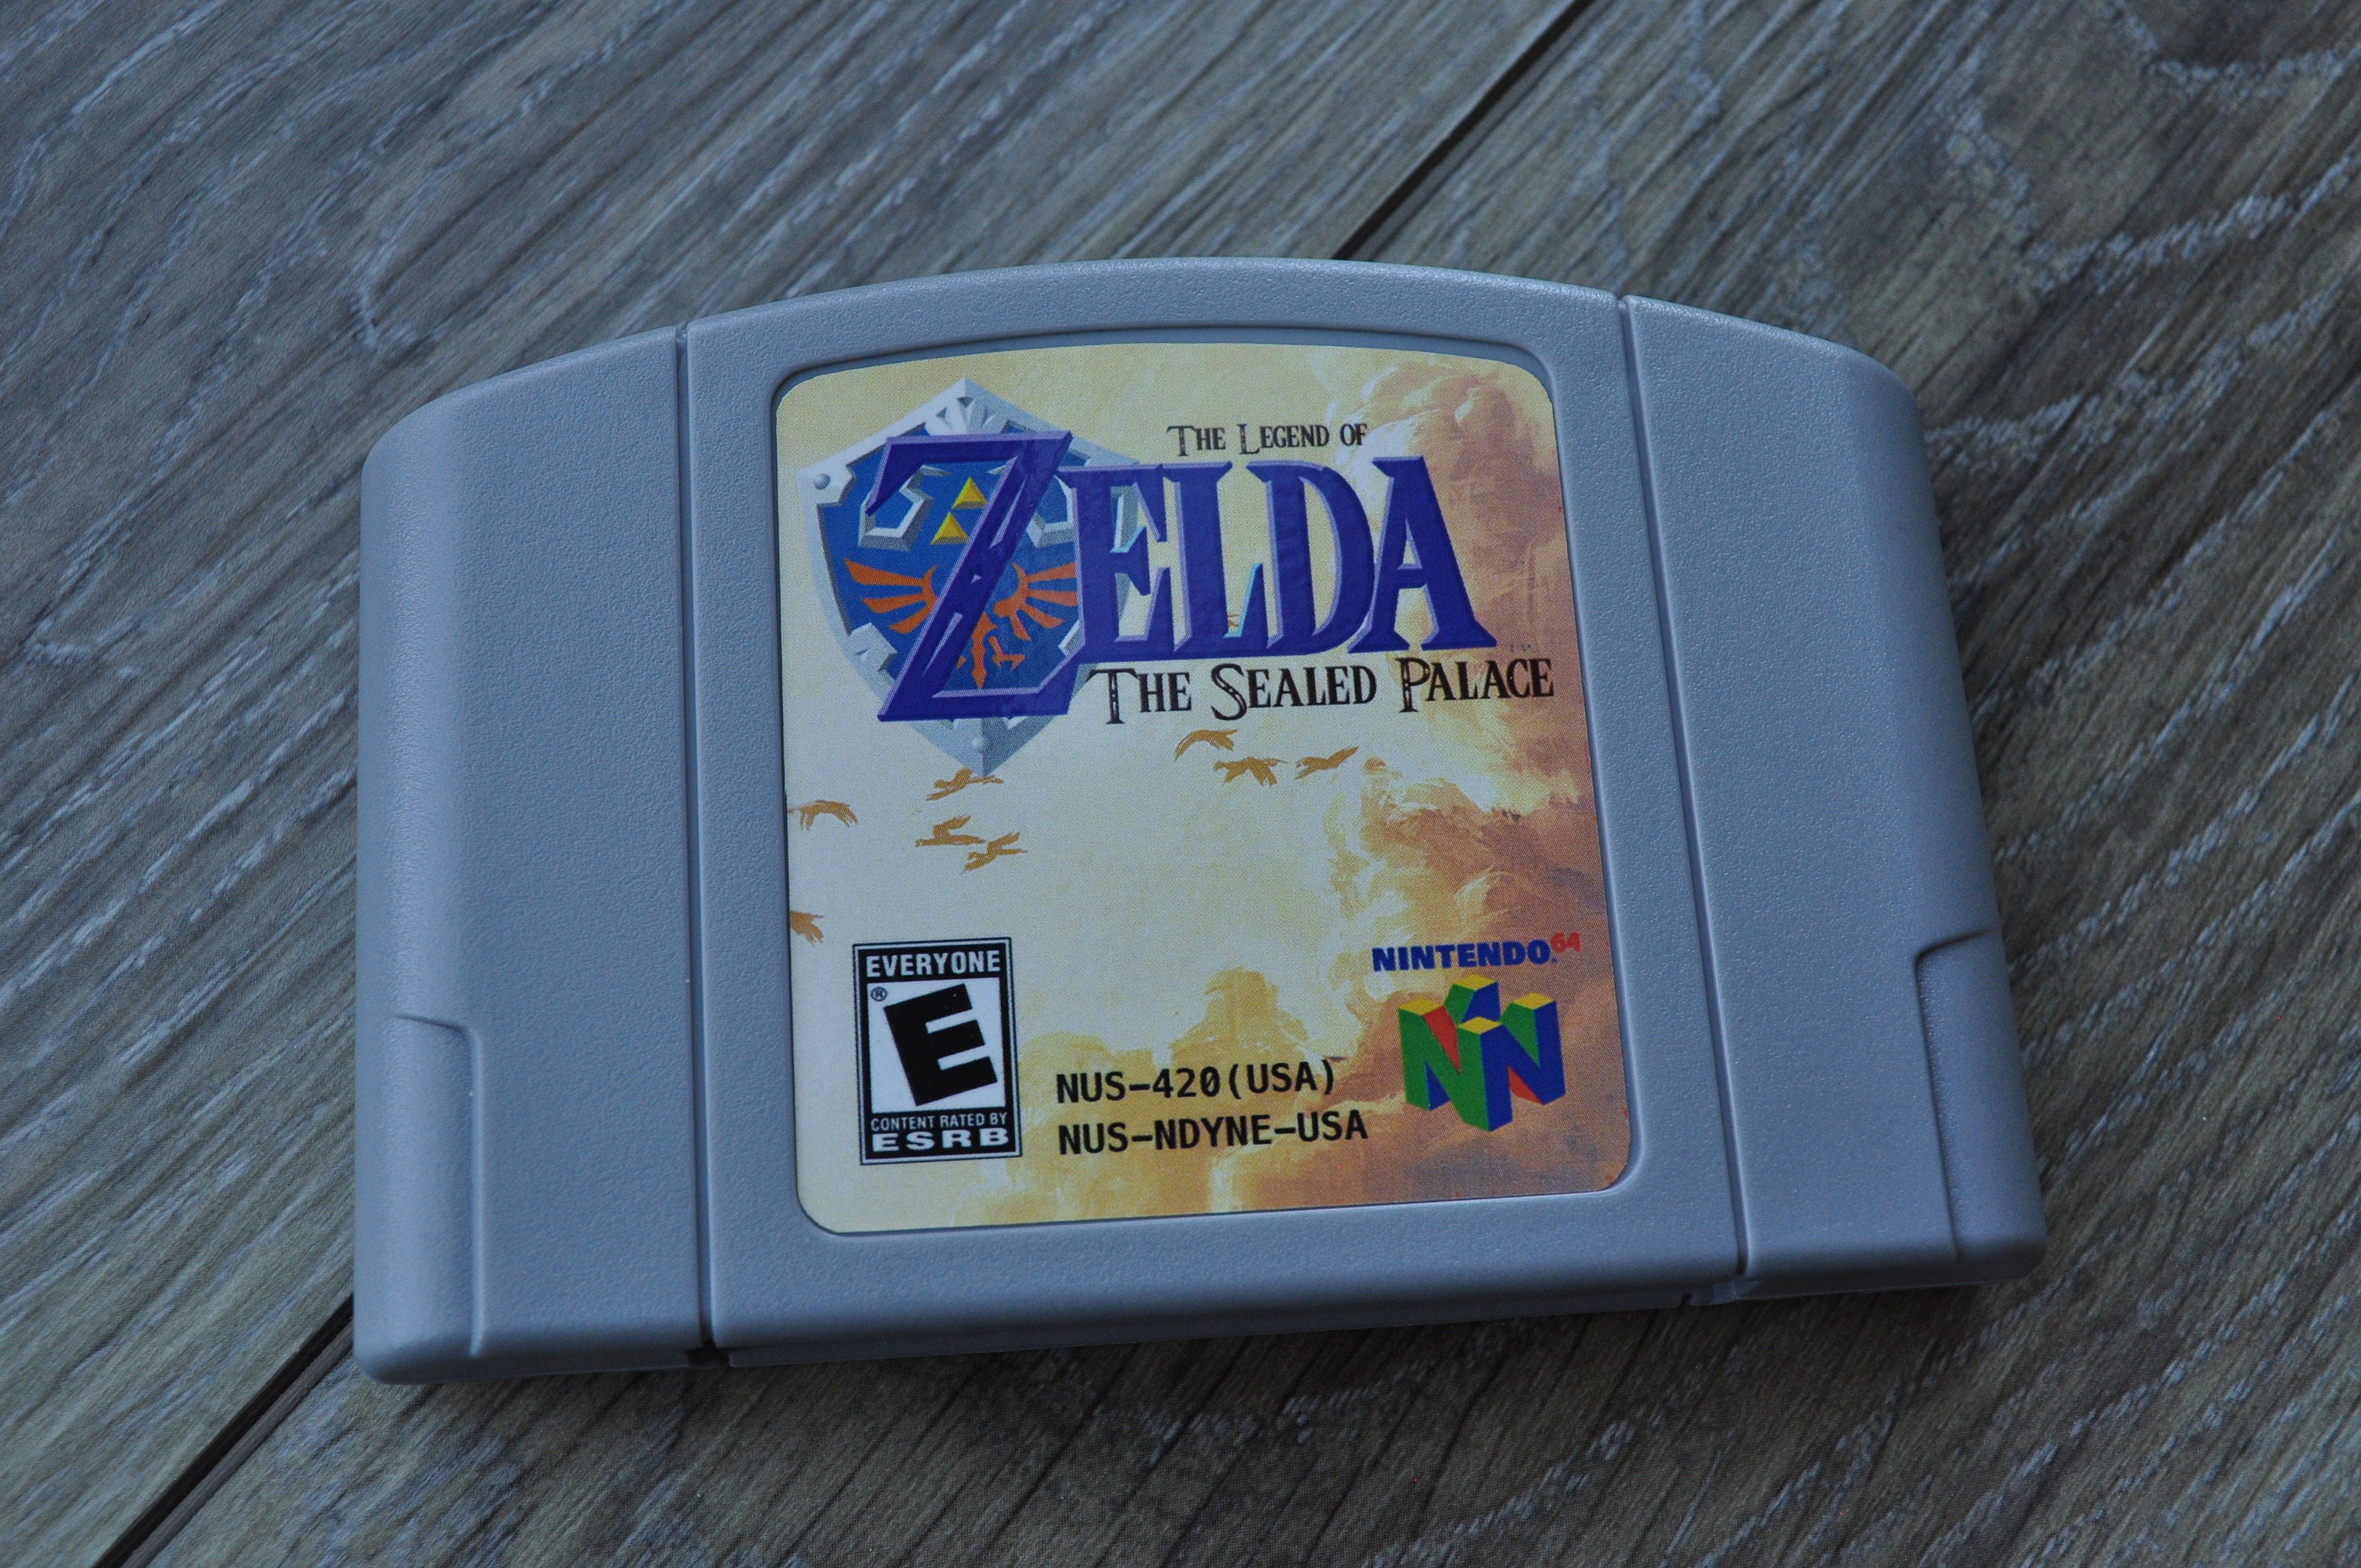 Legend of Zelda, The (USA) (Rev A) ROM < NES ROMs